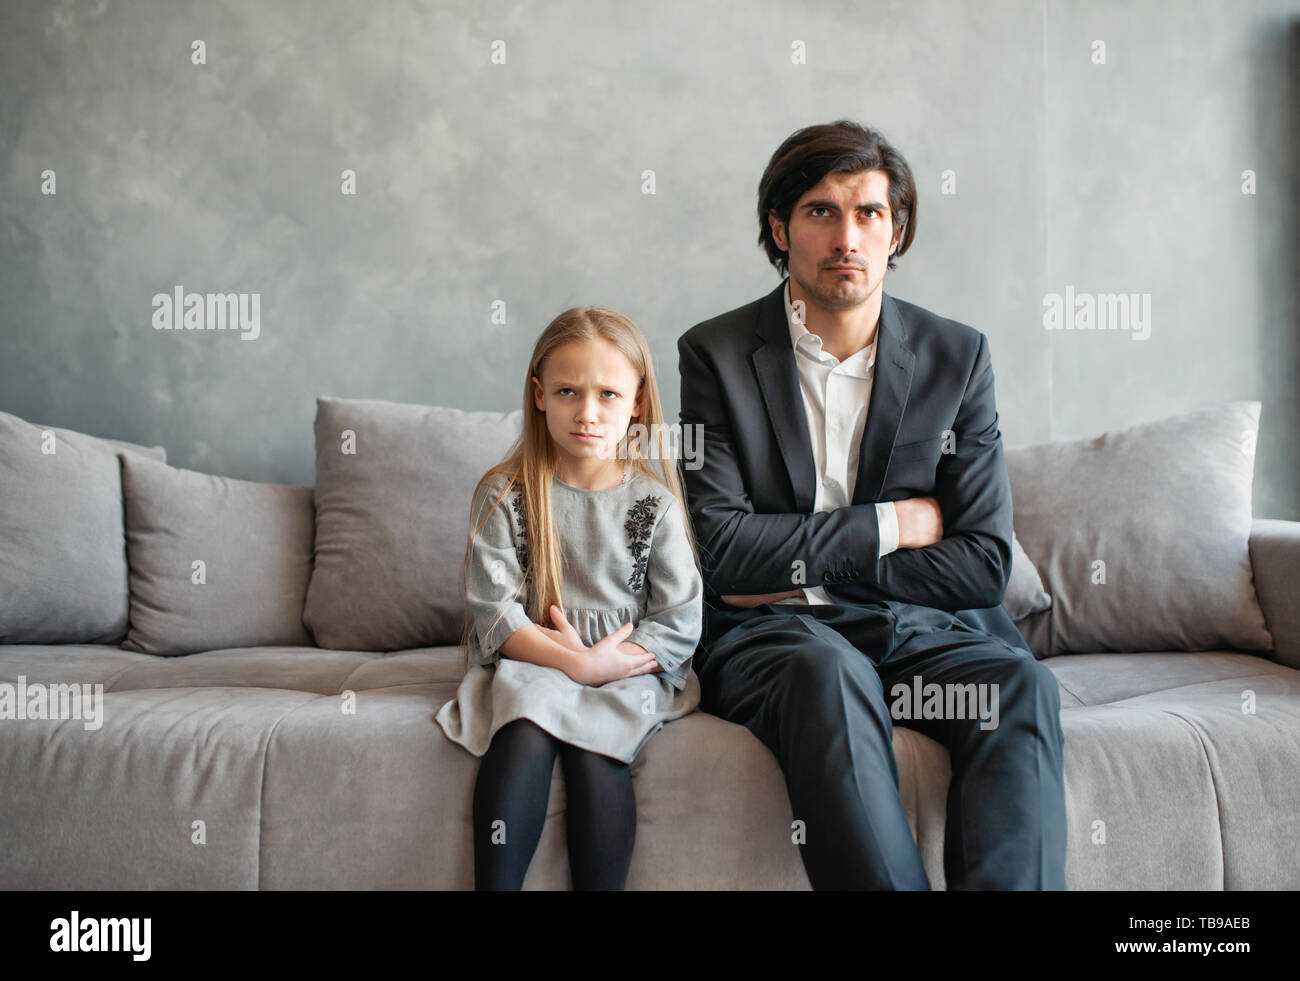 Padre e hija, tanto molesto e infeliz Foto de stock